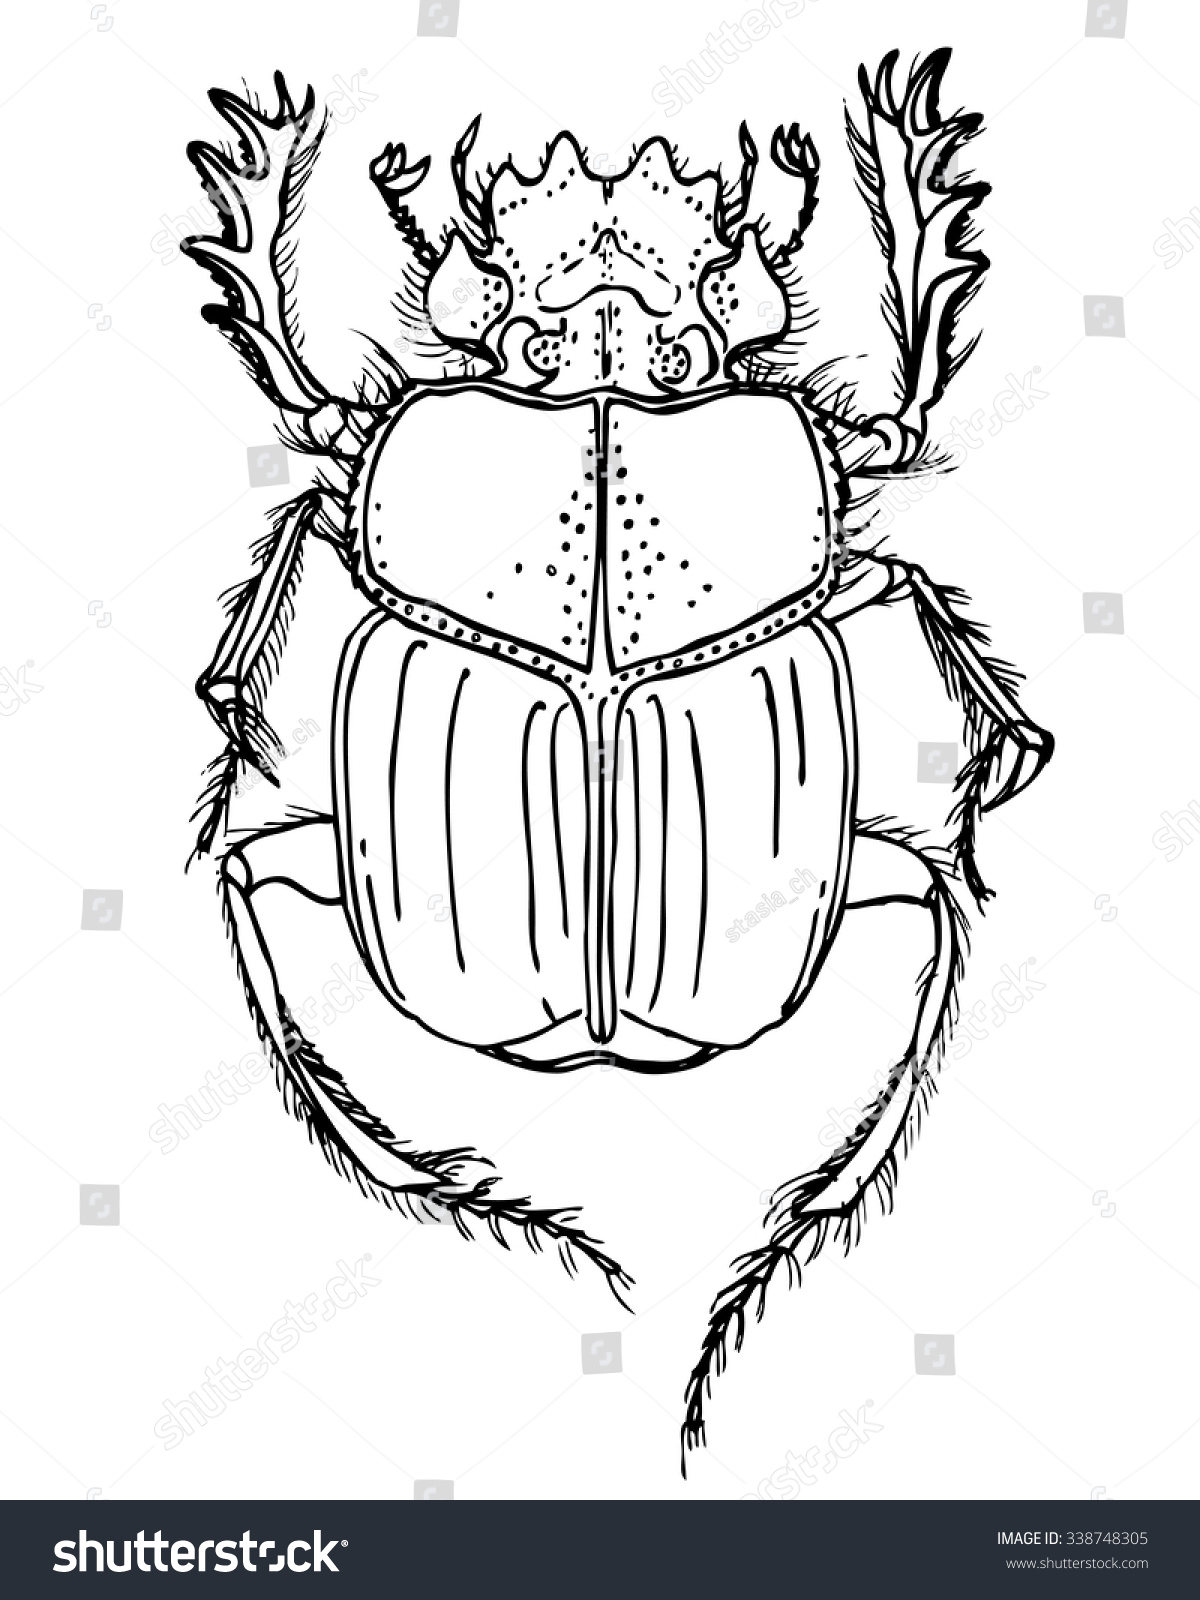 Изображение жука скарабея